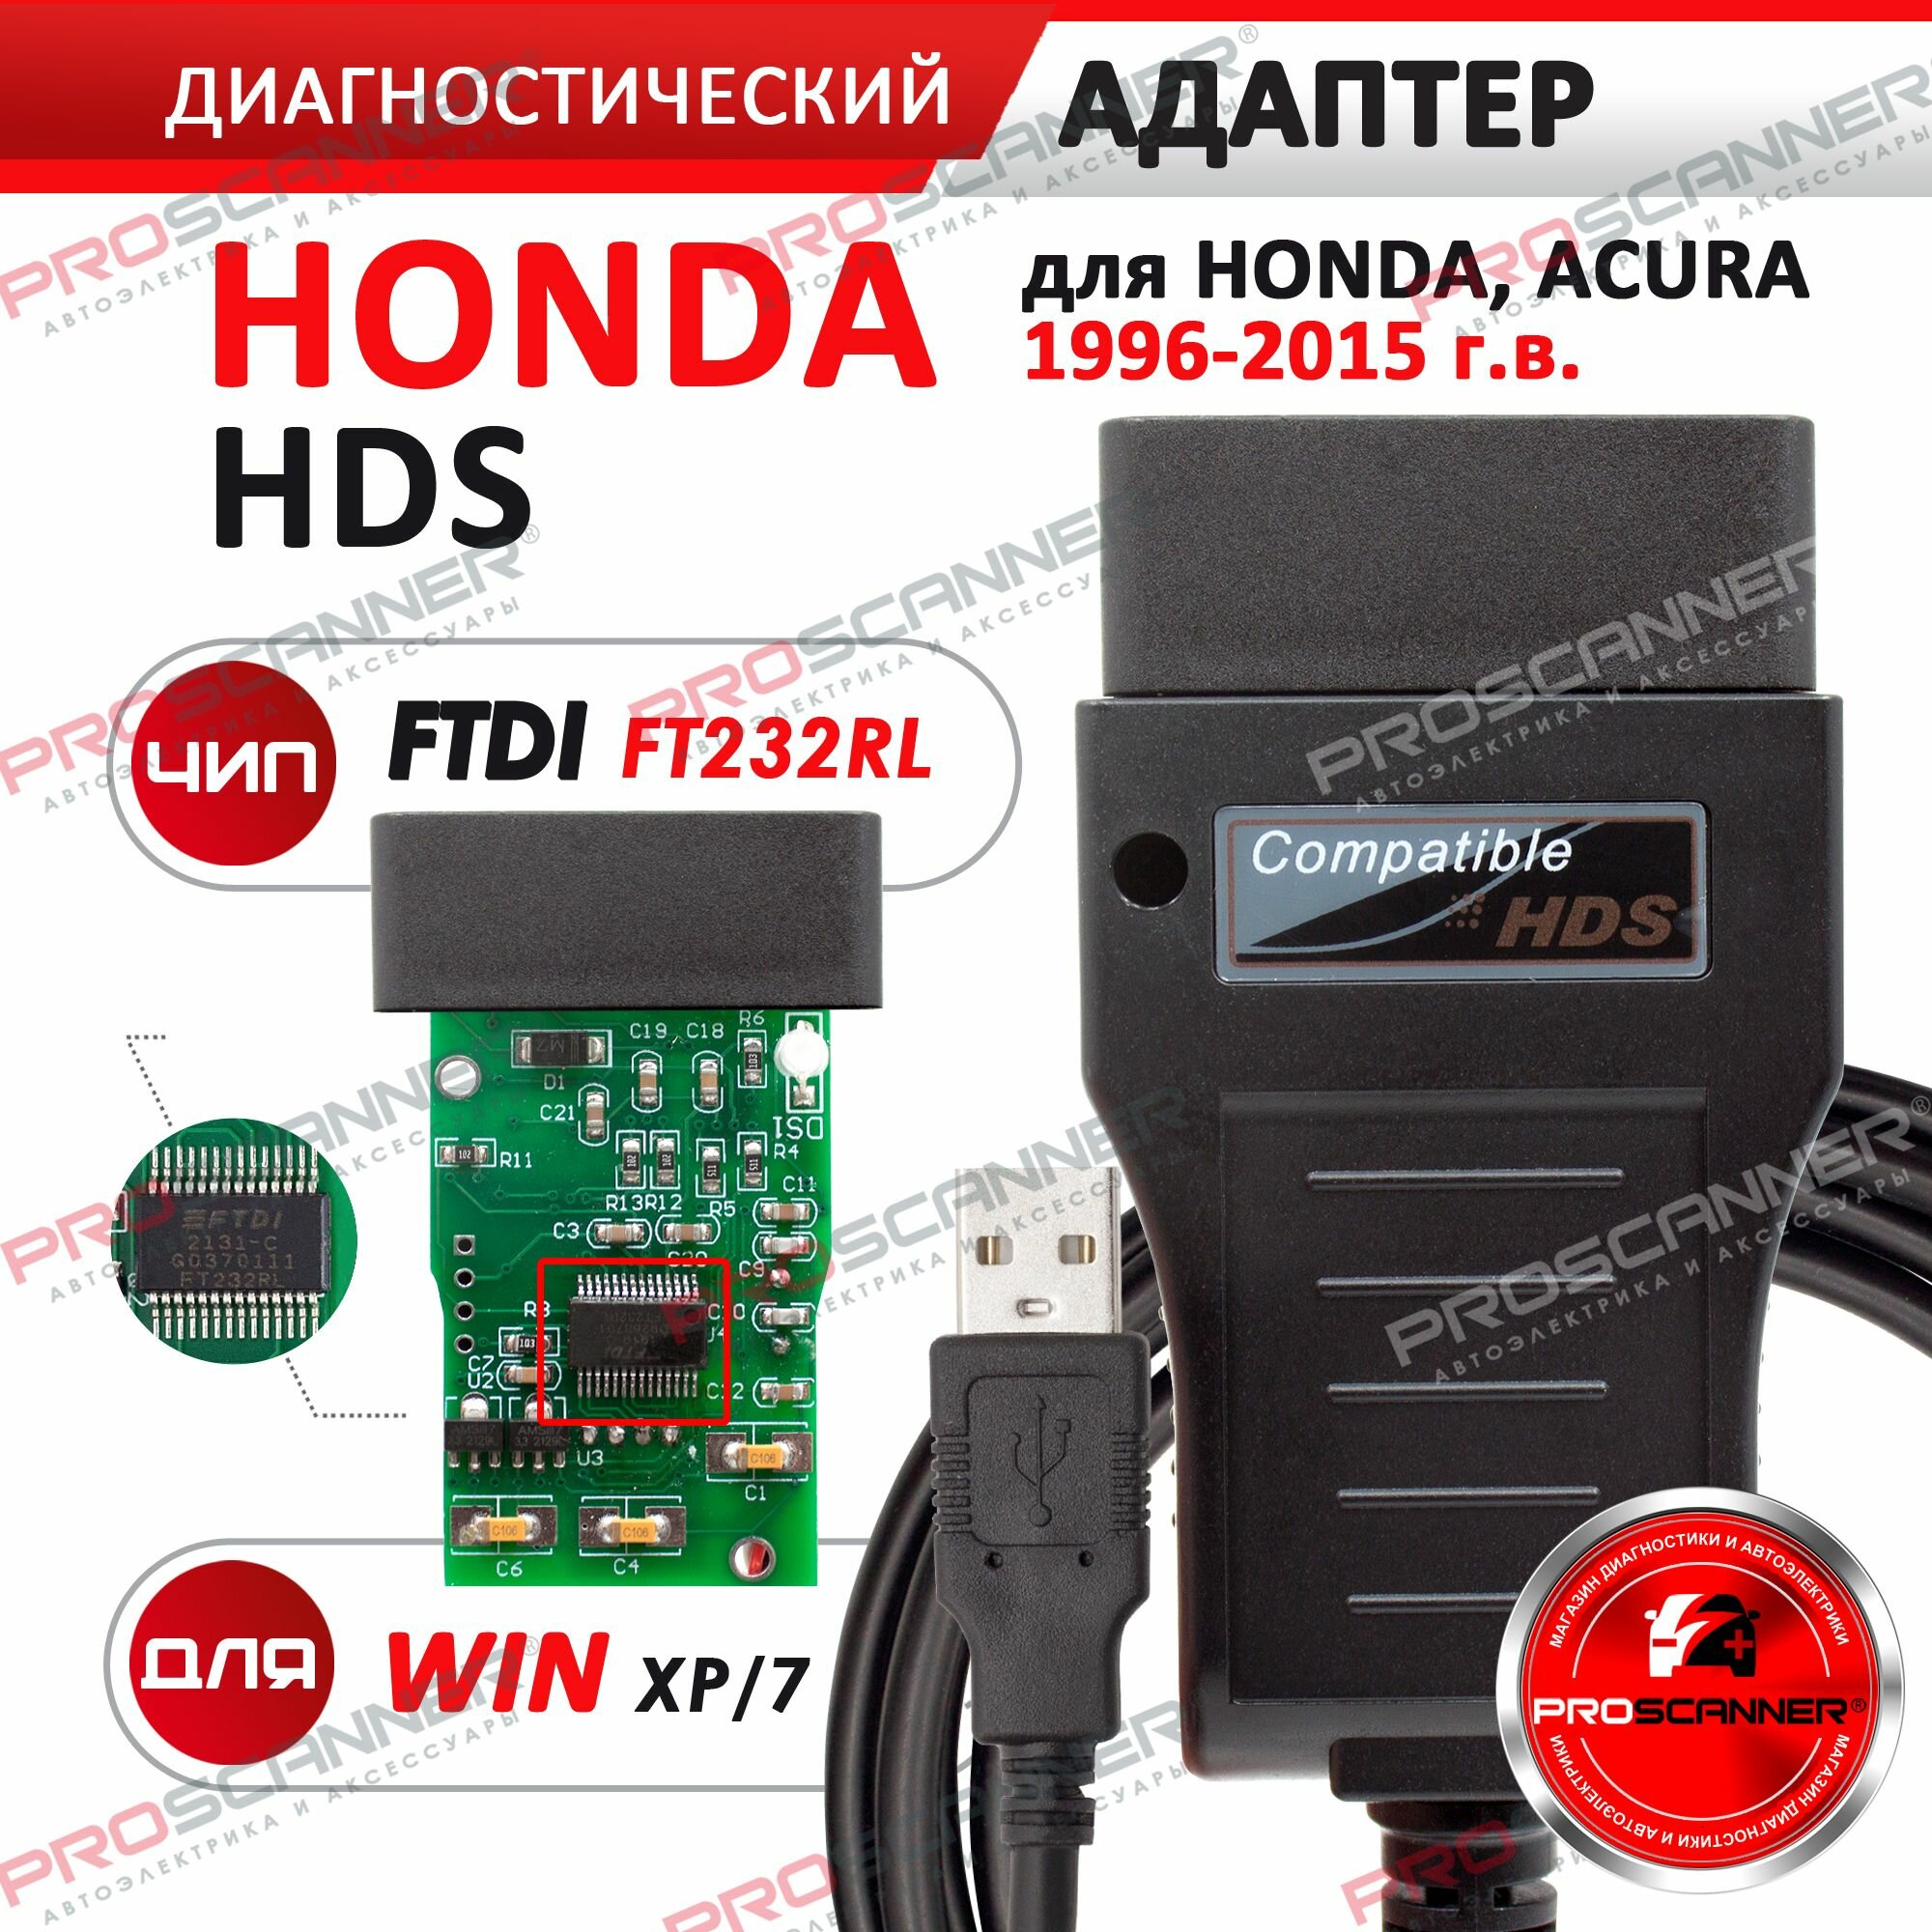 Автосканер Honda HDS (1996-2015 год)